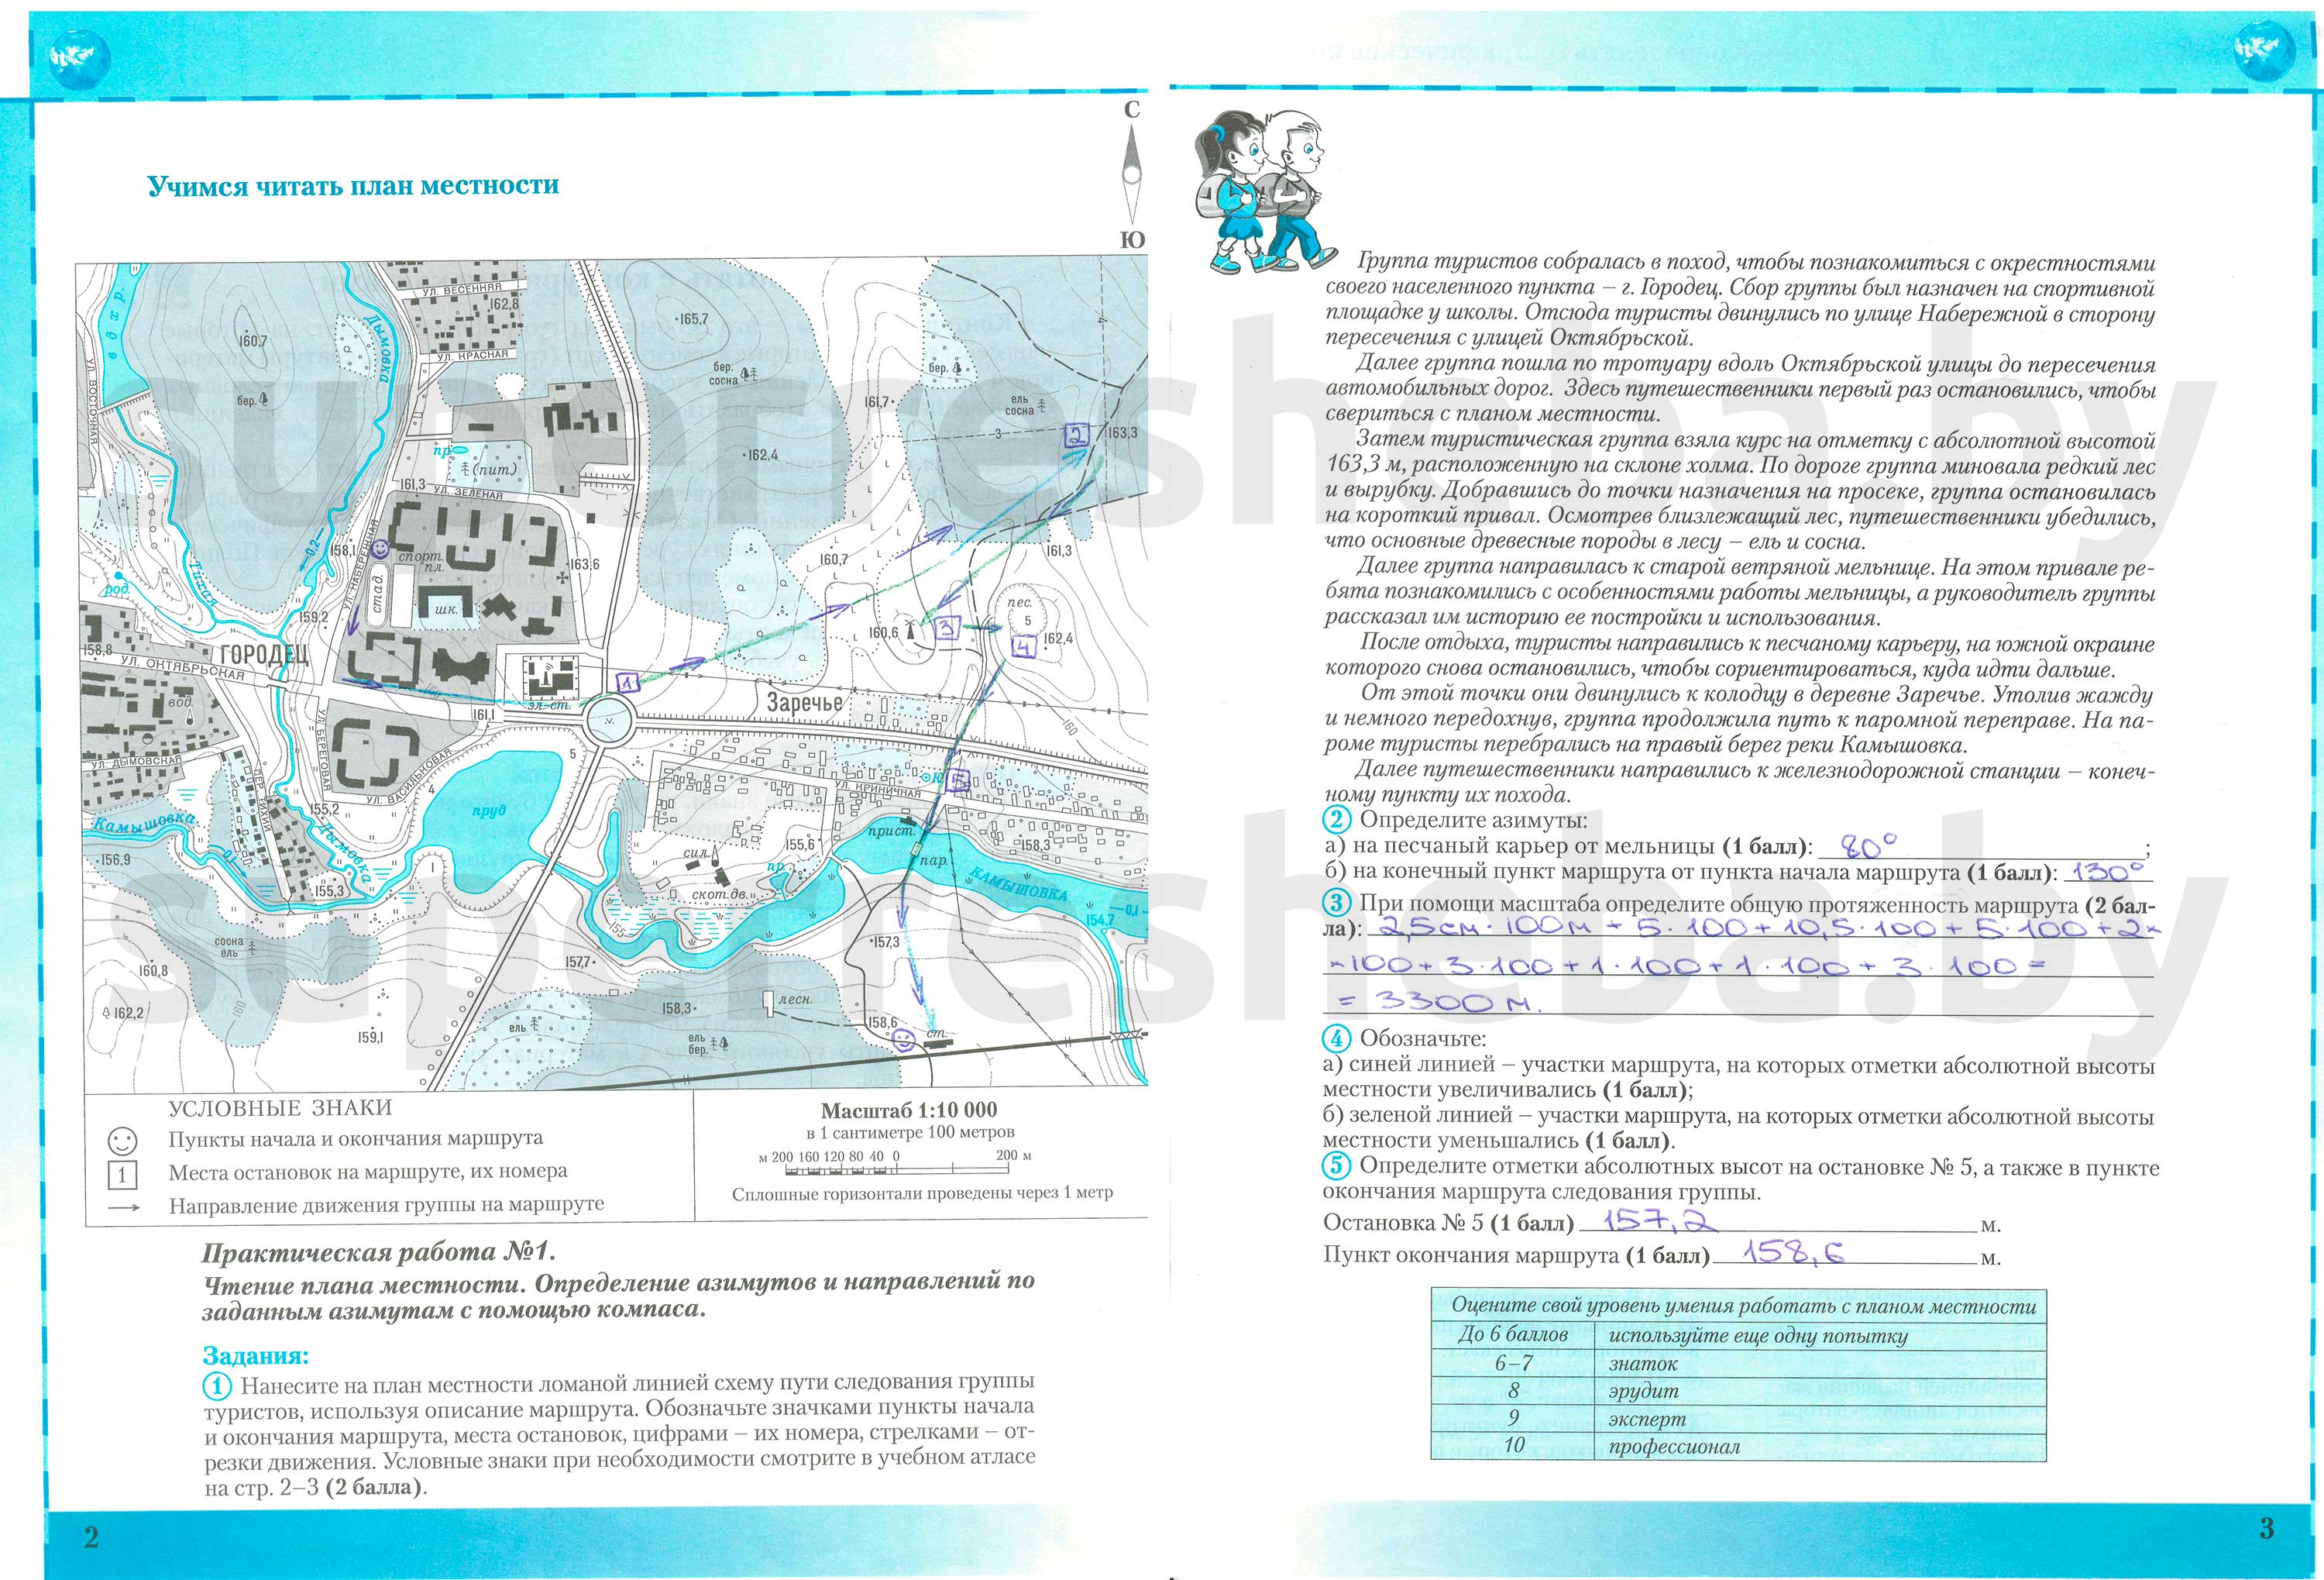 ГДЗ География 6 класс Кольмакова, Пикулик - Контурные карты